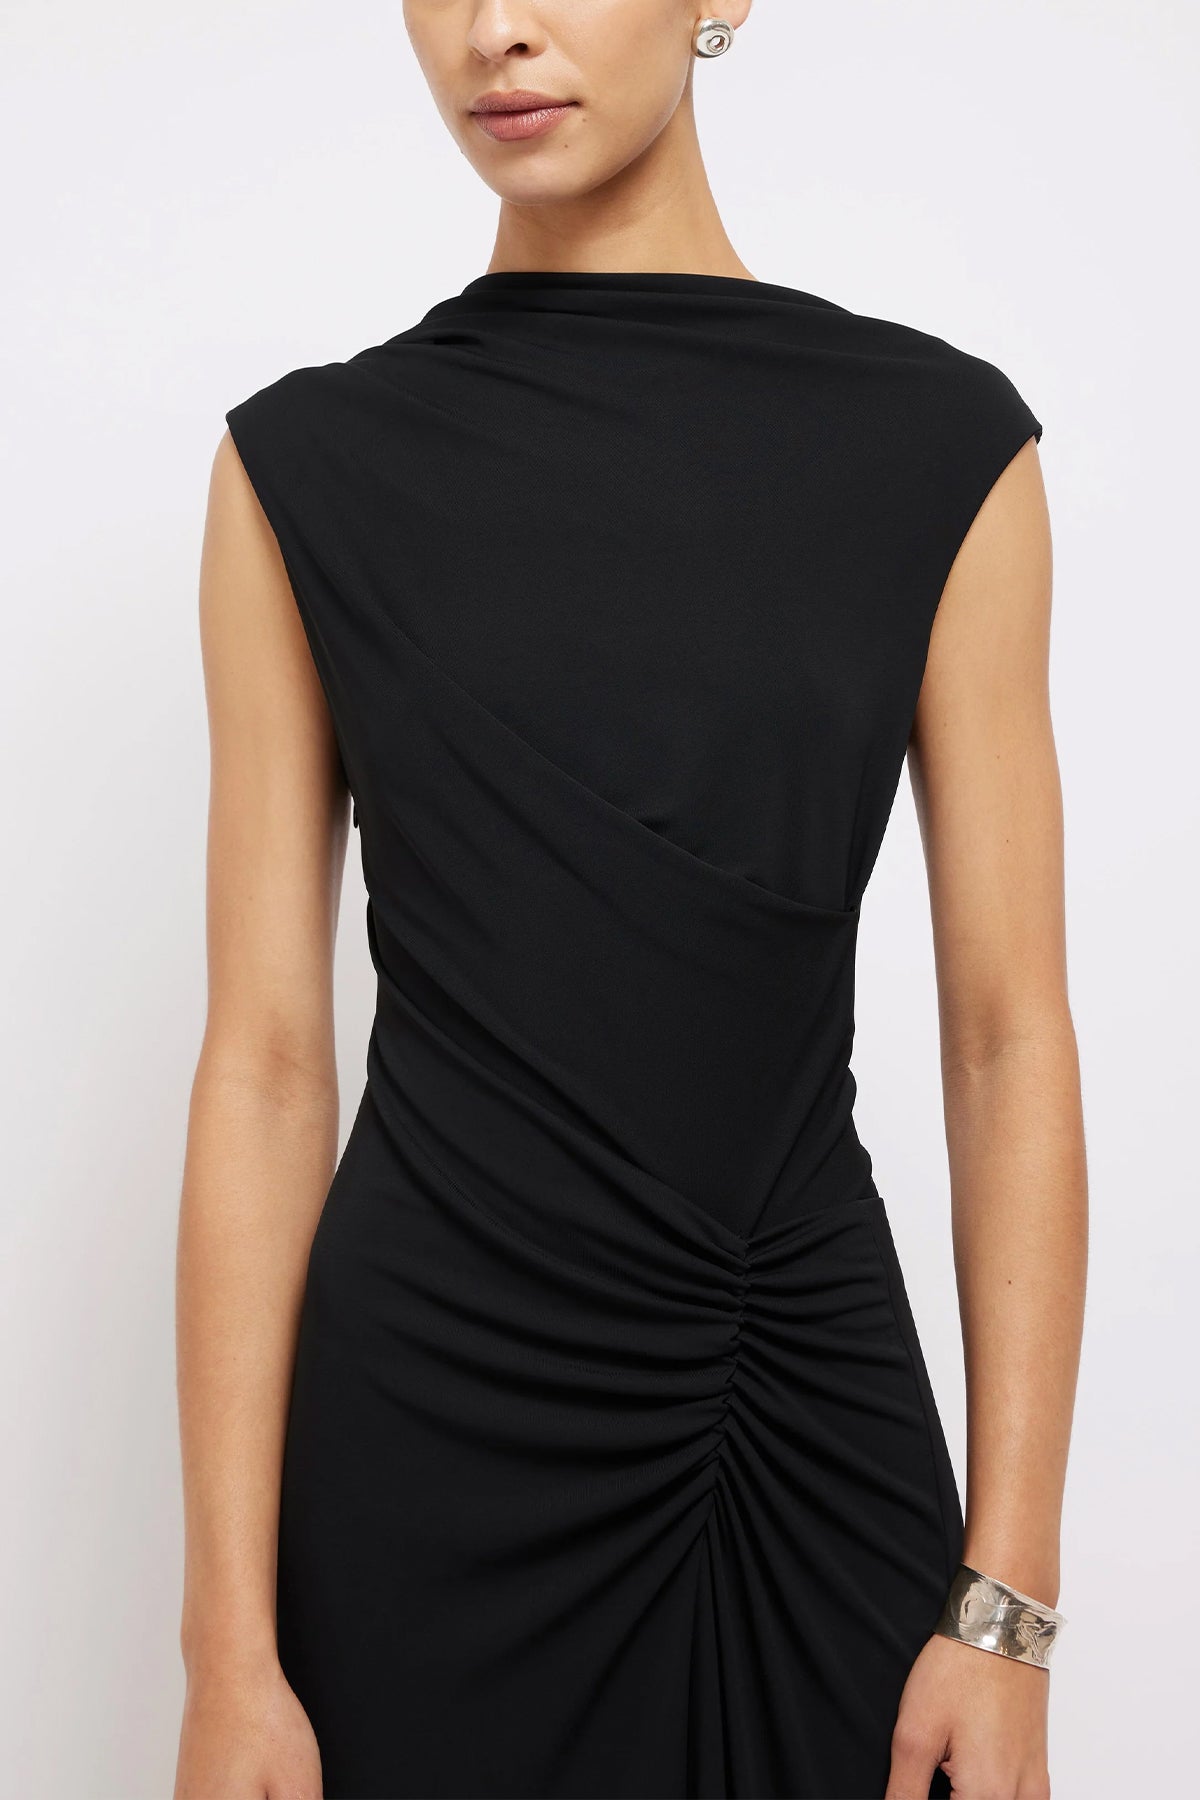 Acacia Sleeveless Midi Dress in Black - shop-olivia.com